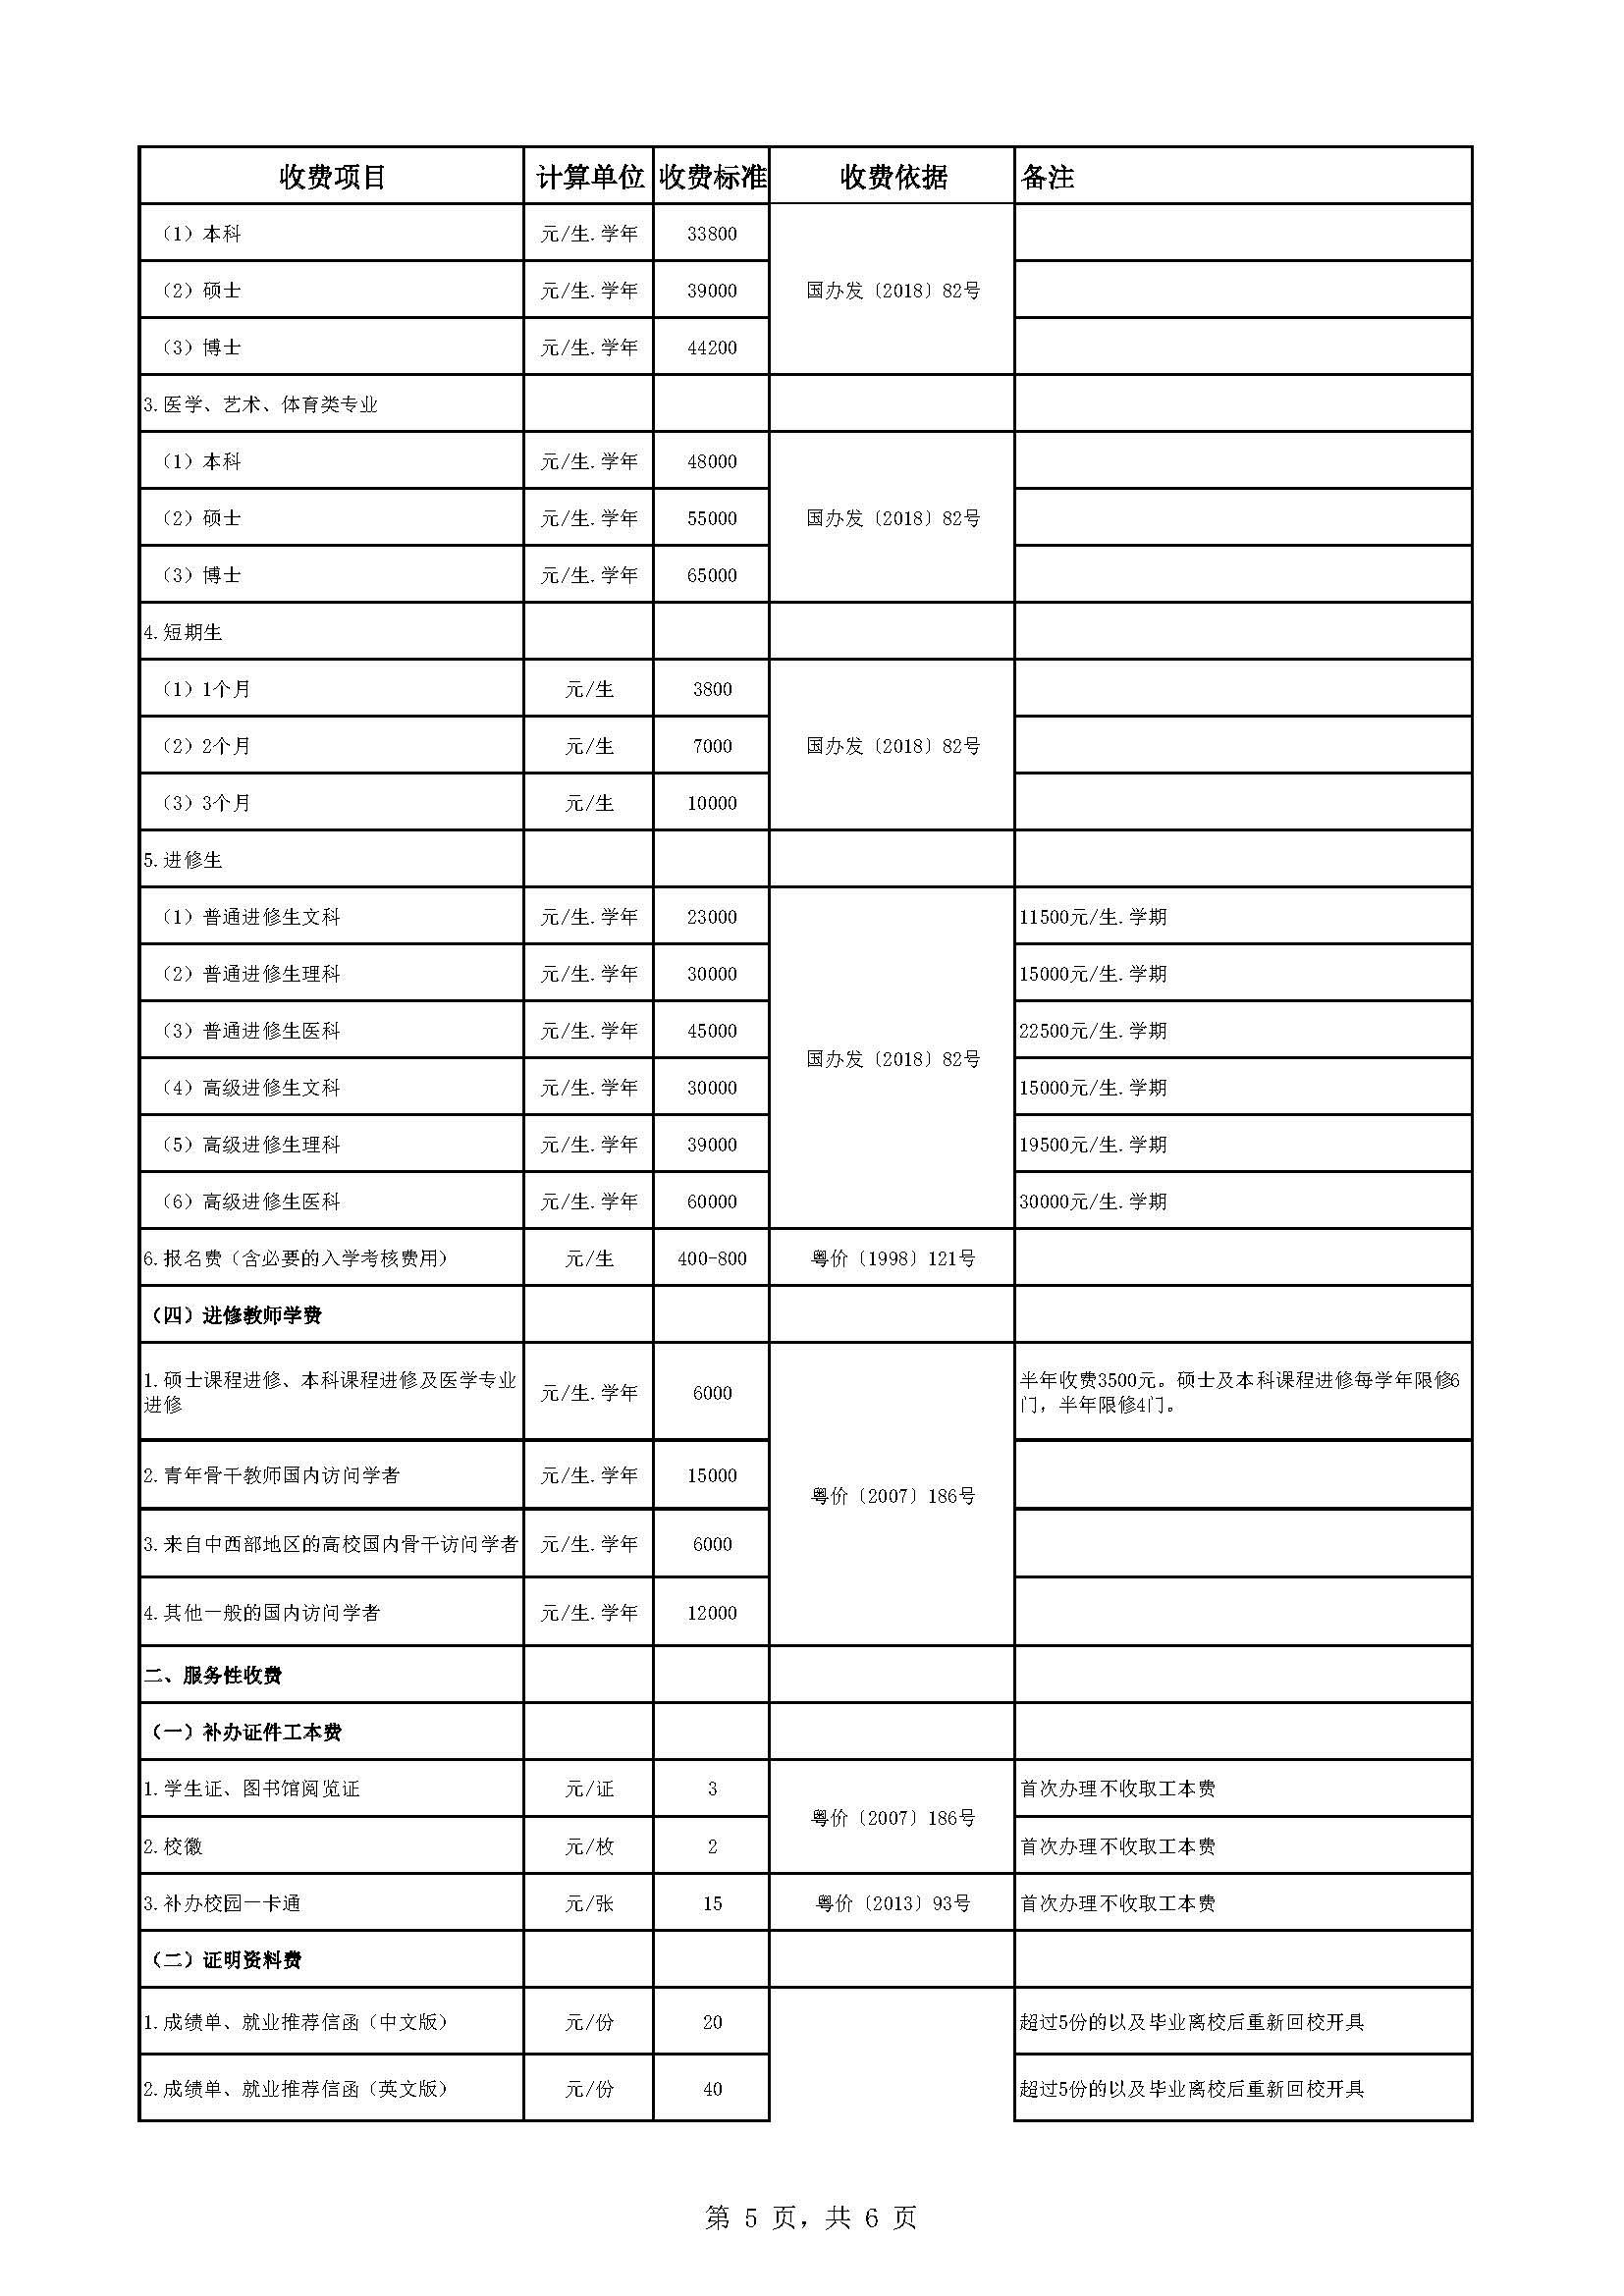 中山大学教育收费公示表（2022-2023年）_页面_5.jpg